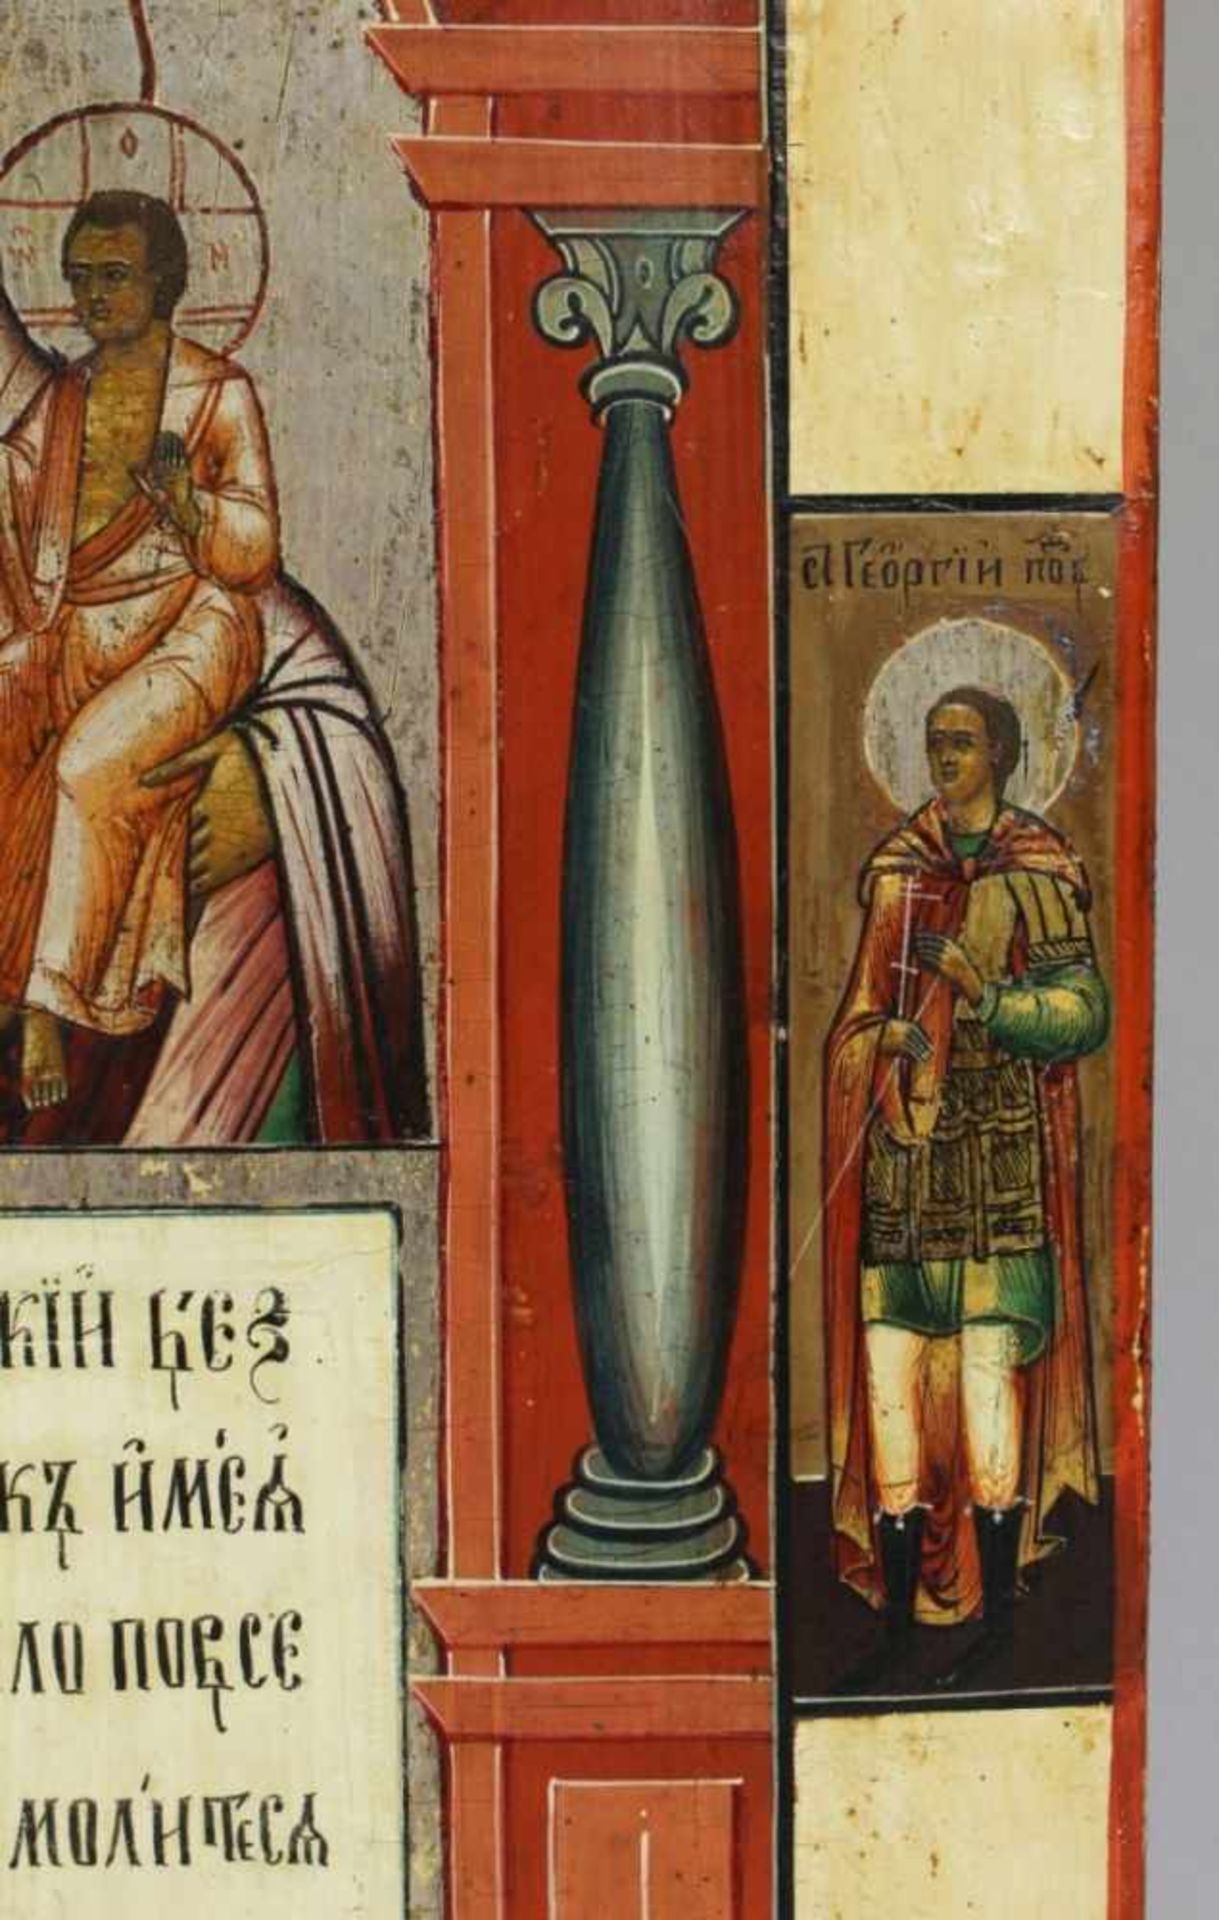 Ikone, Russland, 19. Jh., rechteckige Form, frontseitig in polychromen Eitemperafarben mitSilber- - Bild 2 aus 4